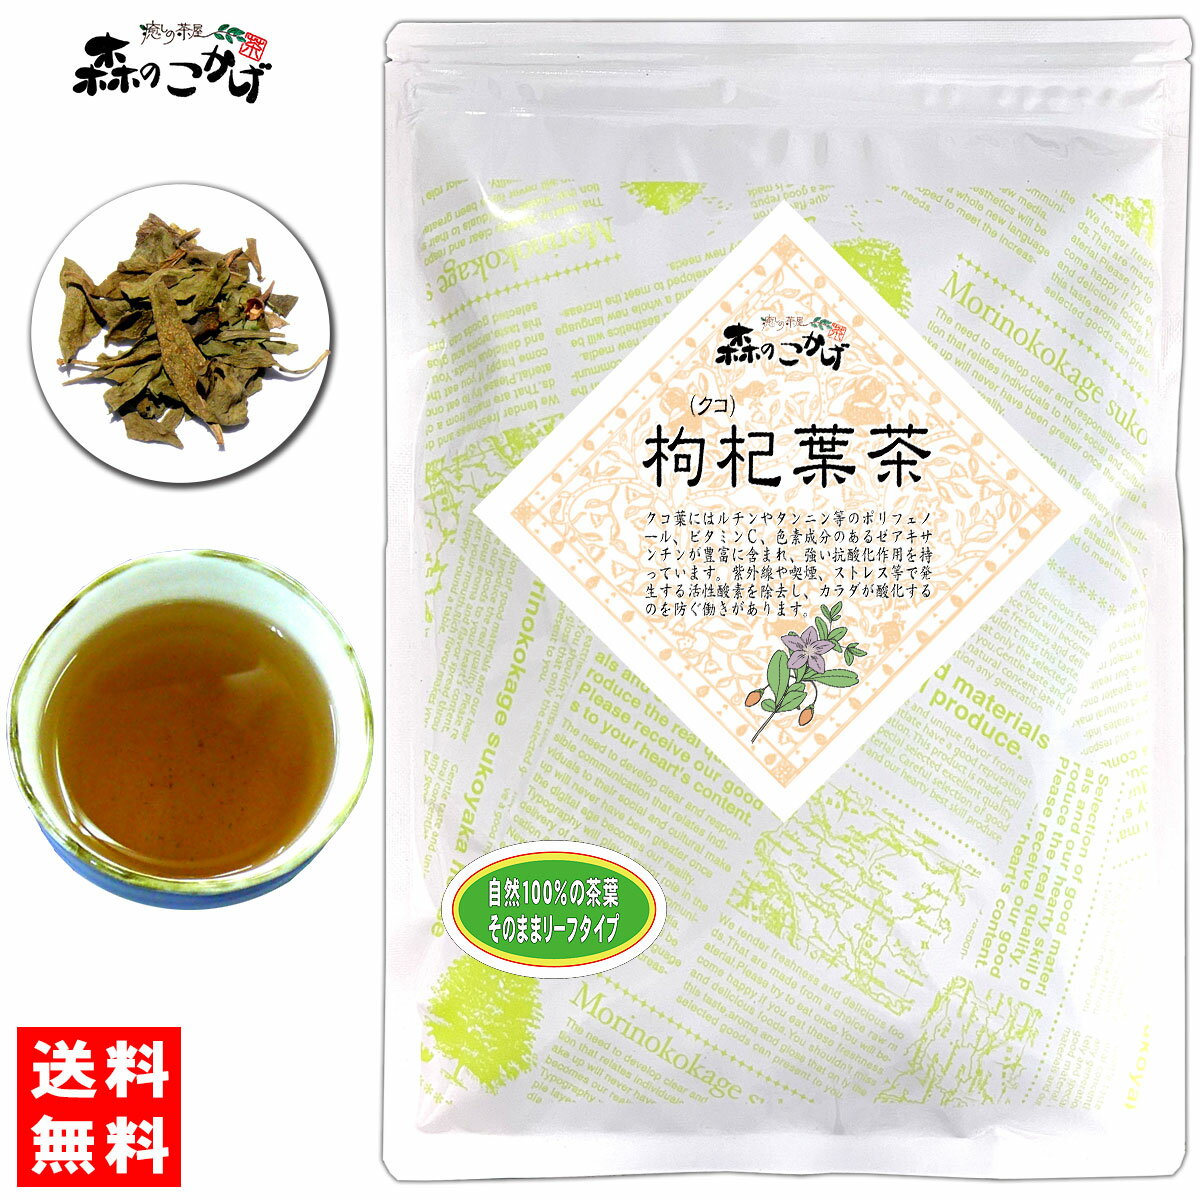 5【送料無料】 クコ葉茶 (180g) 茶葉 (